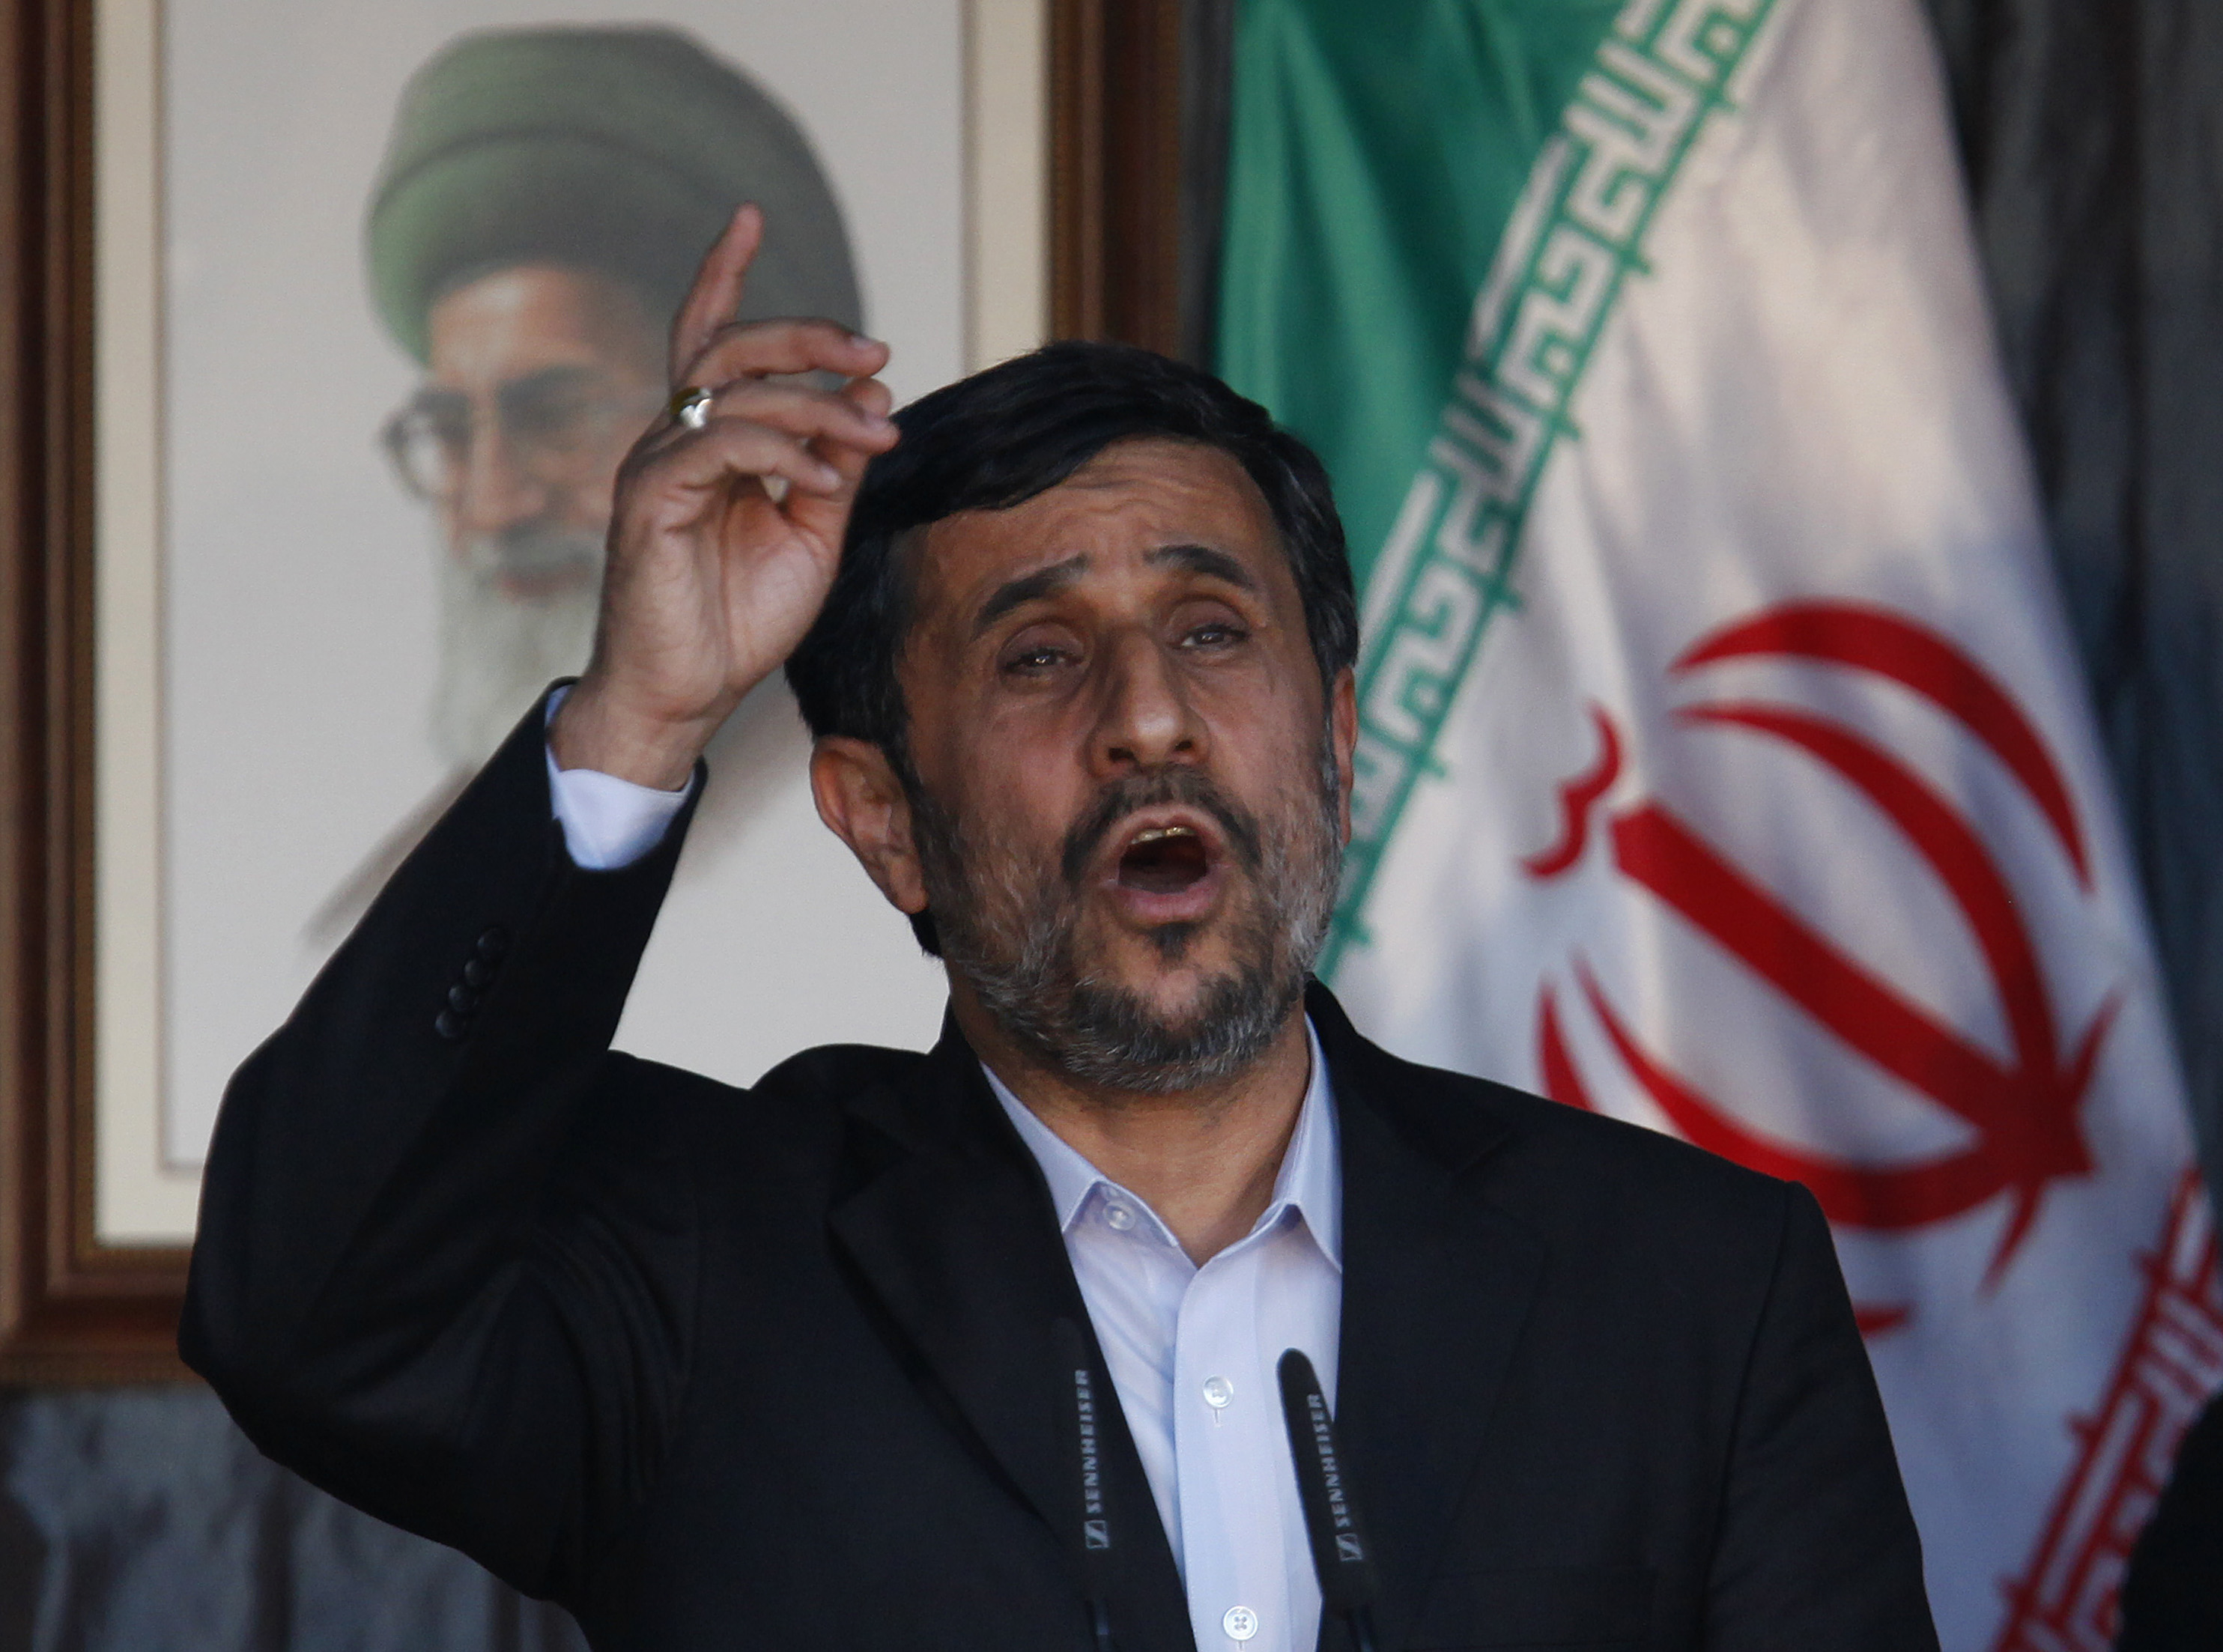 Libanon, Mahmoud Ahmadinejad, Iran, Israel, Knesset